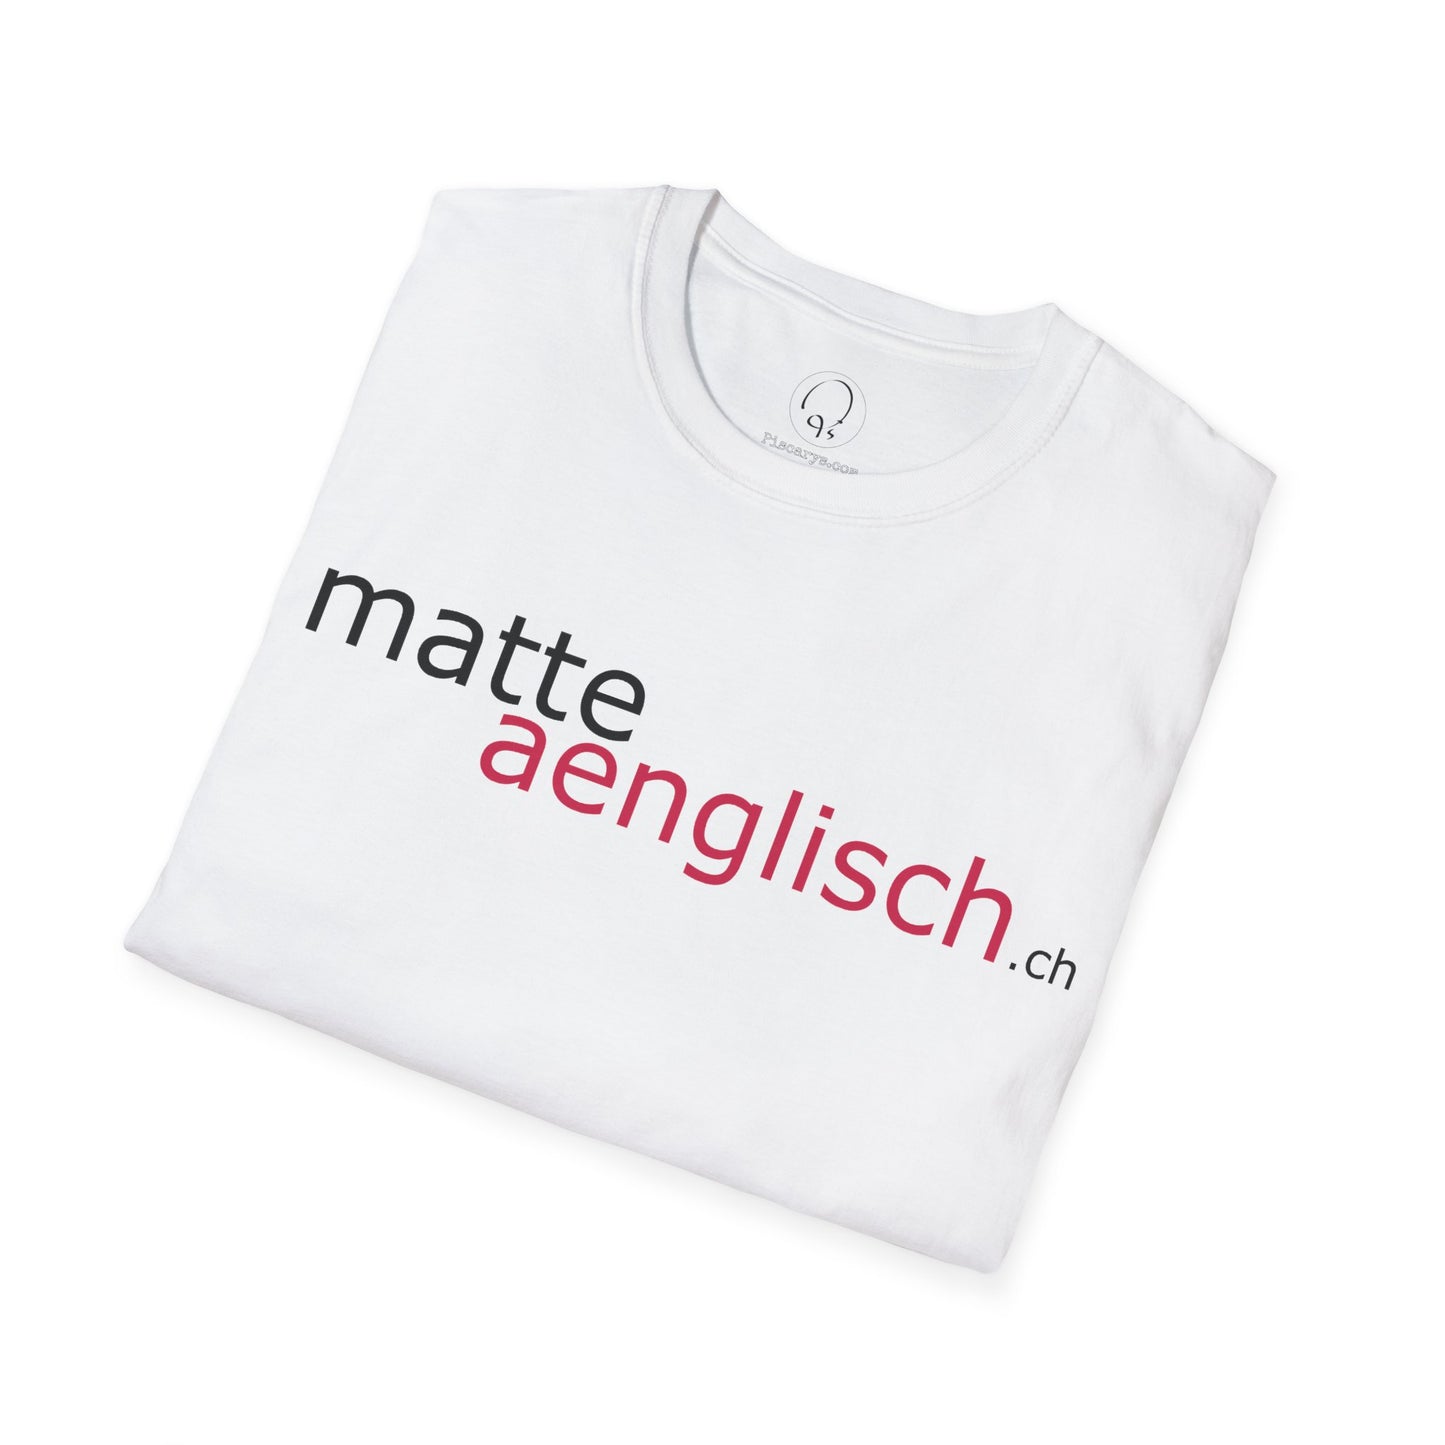 Matteaenglisch Shirt